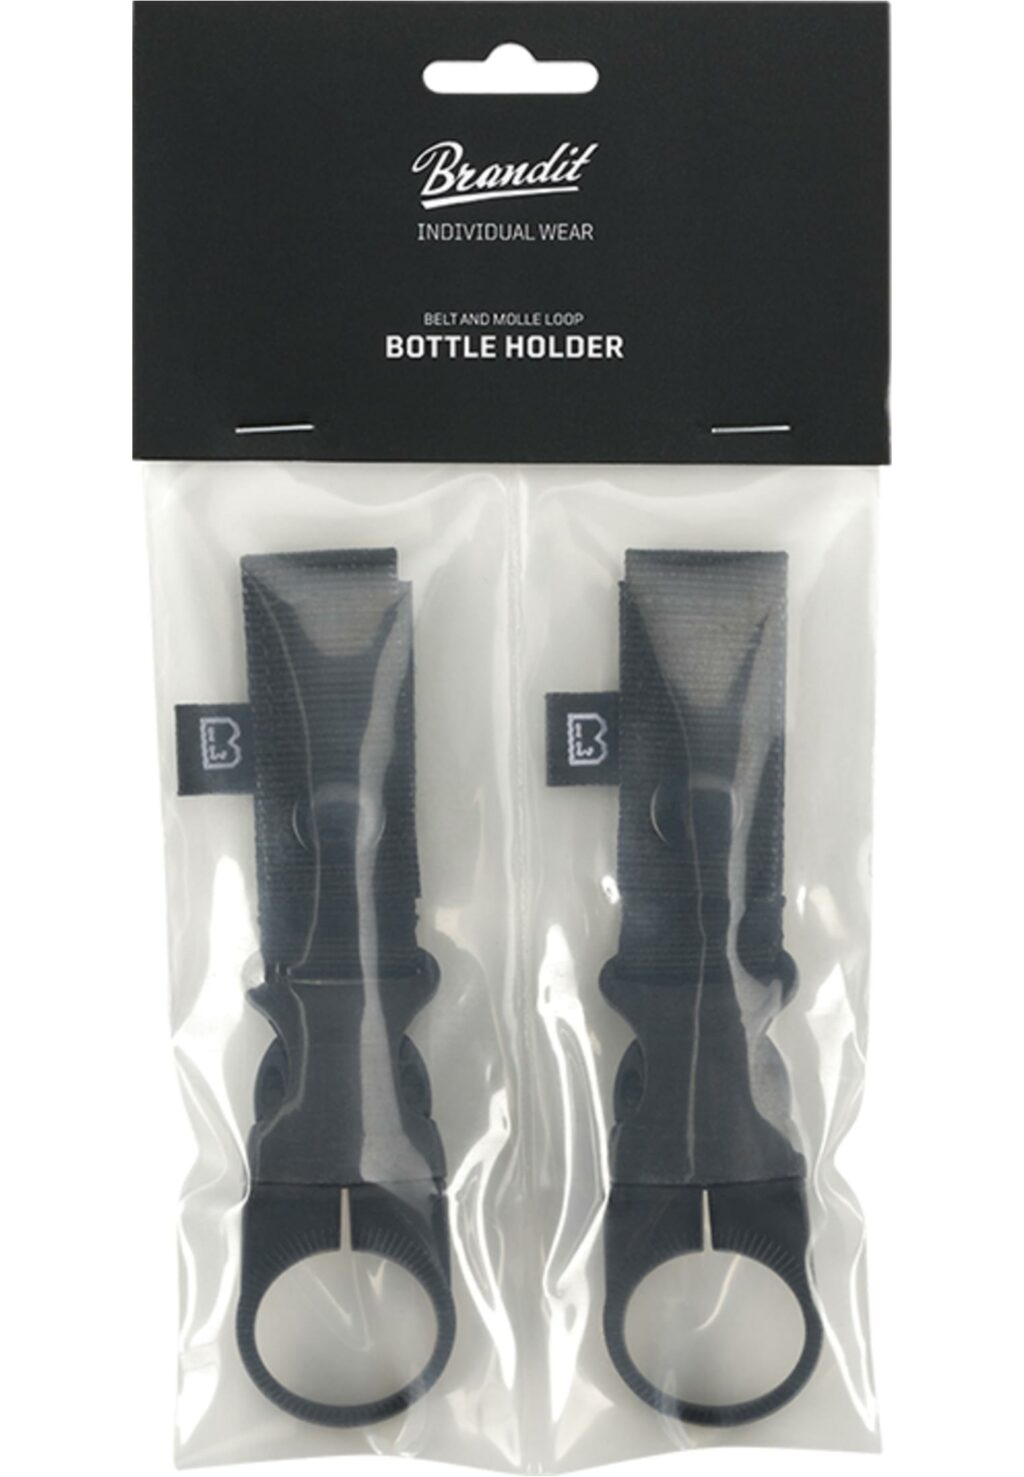 Brandit Belt and Molle Loop Bottle Holder 2-Pack black one BD8080